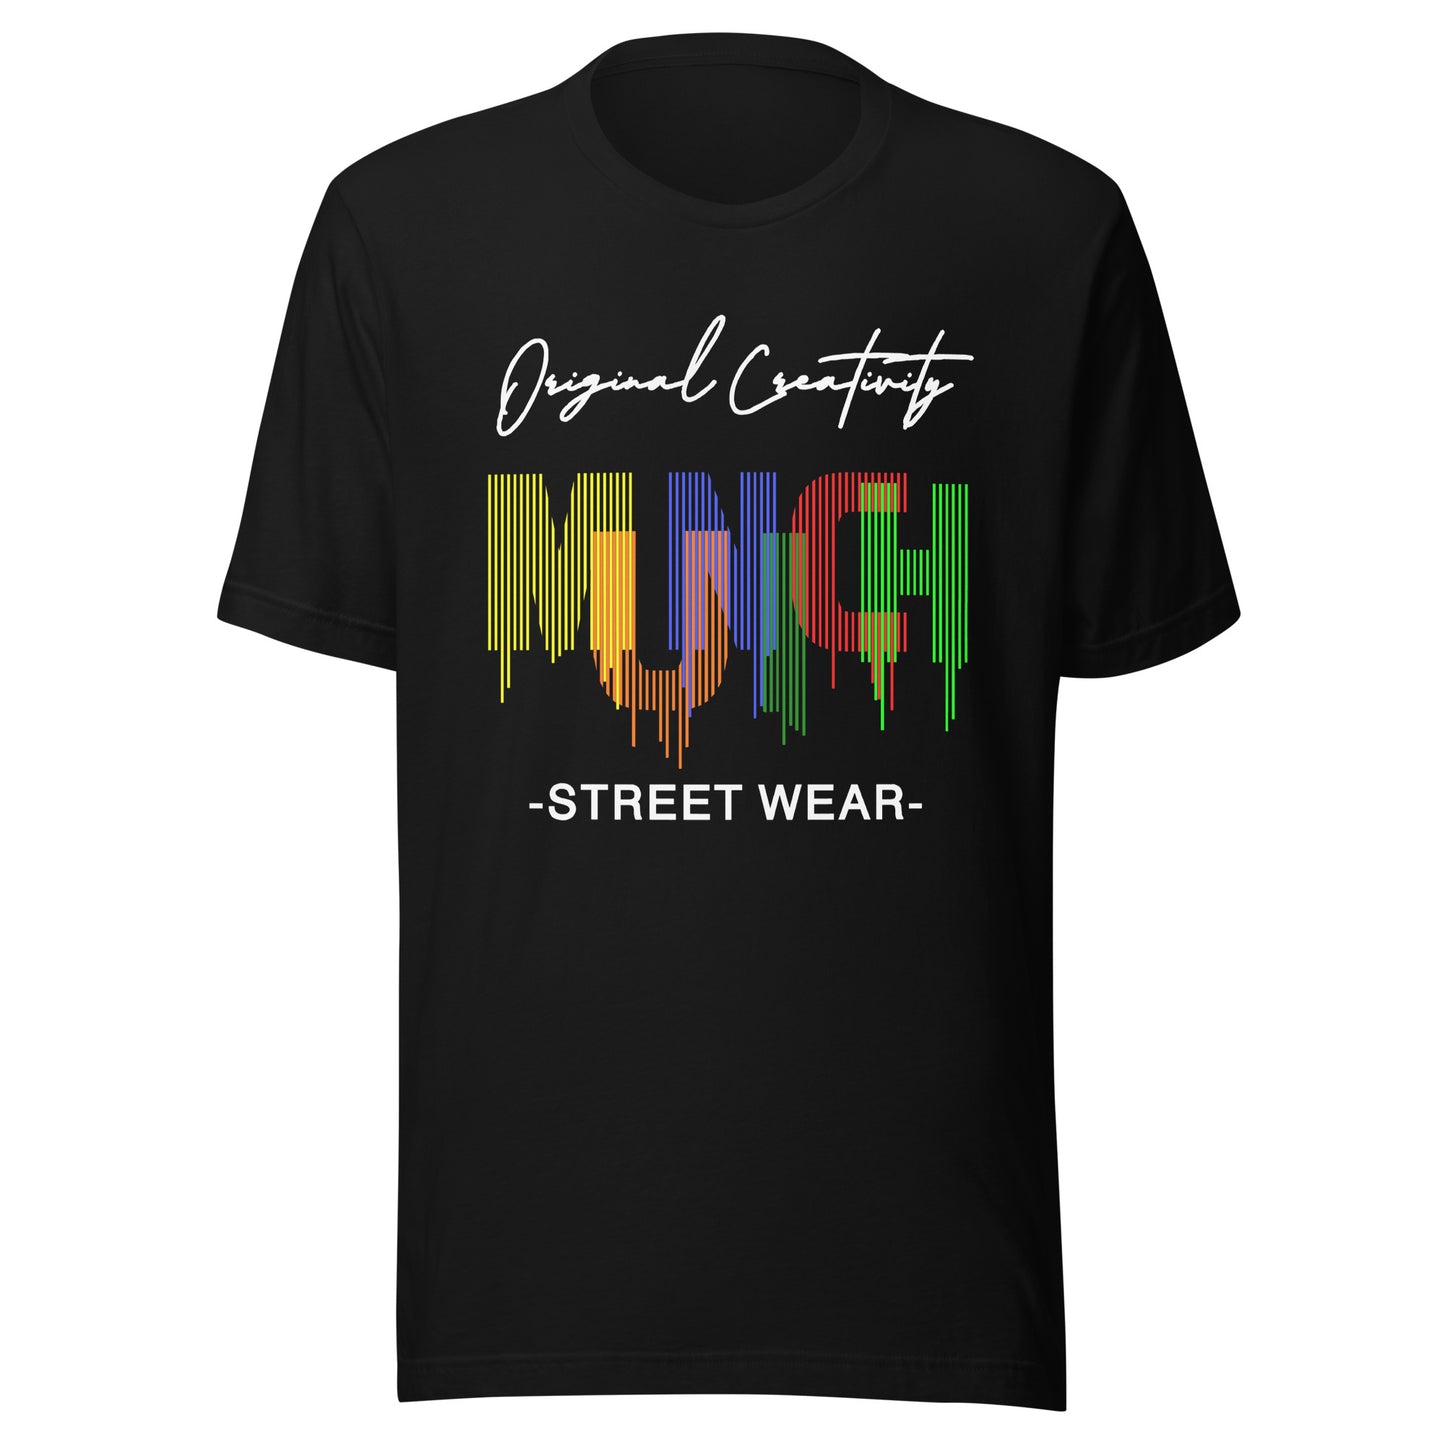 München T-Shirt, München Fan, Munich T-Shirt, Munich Fan